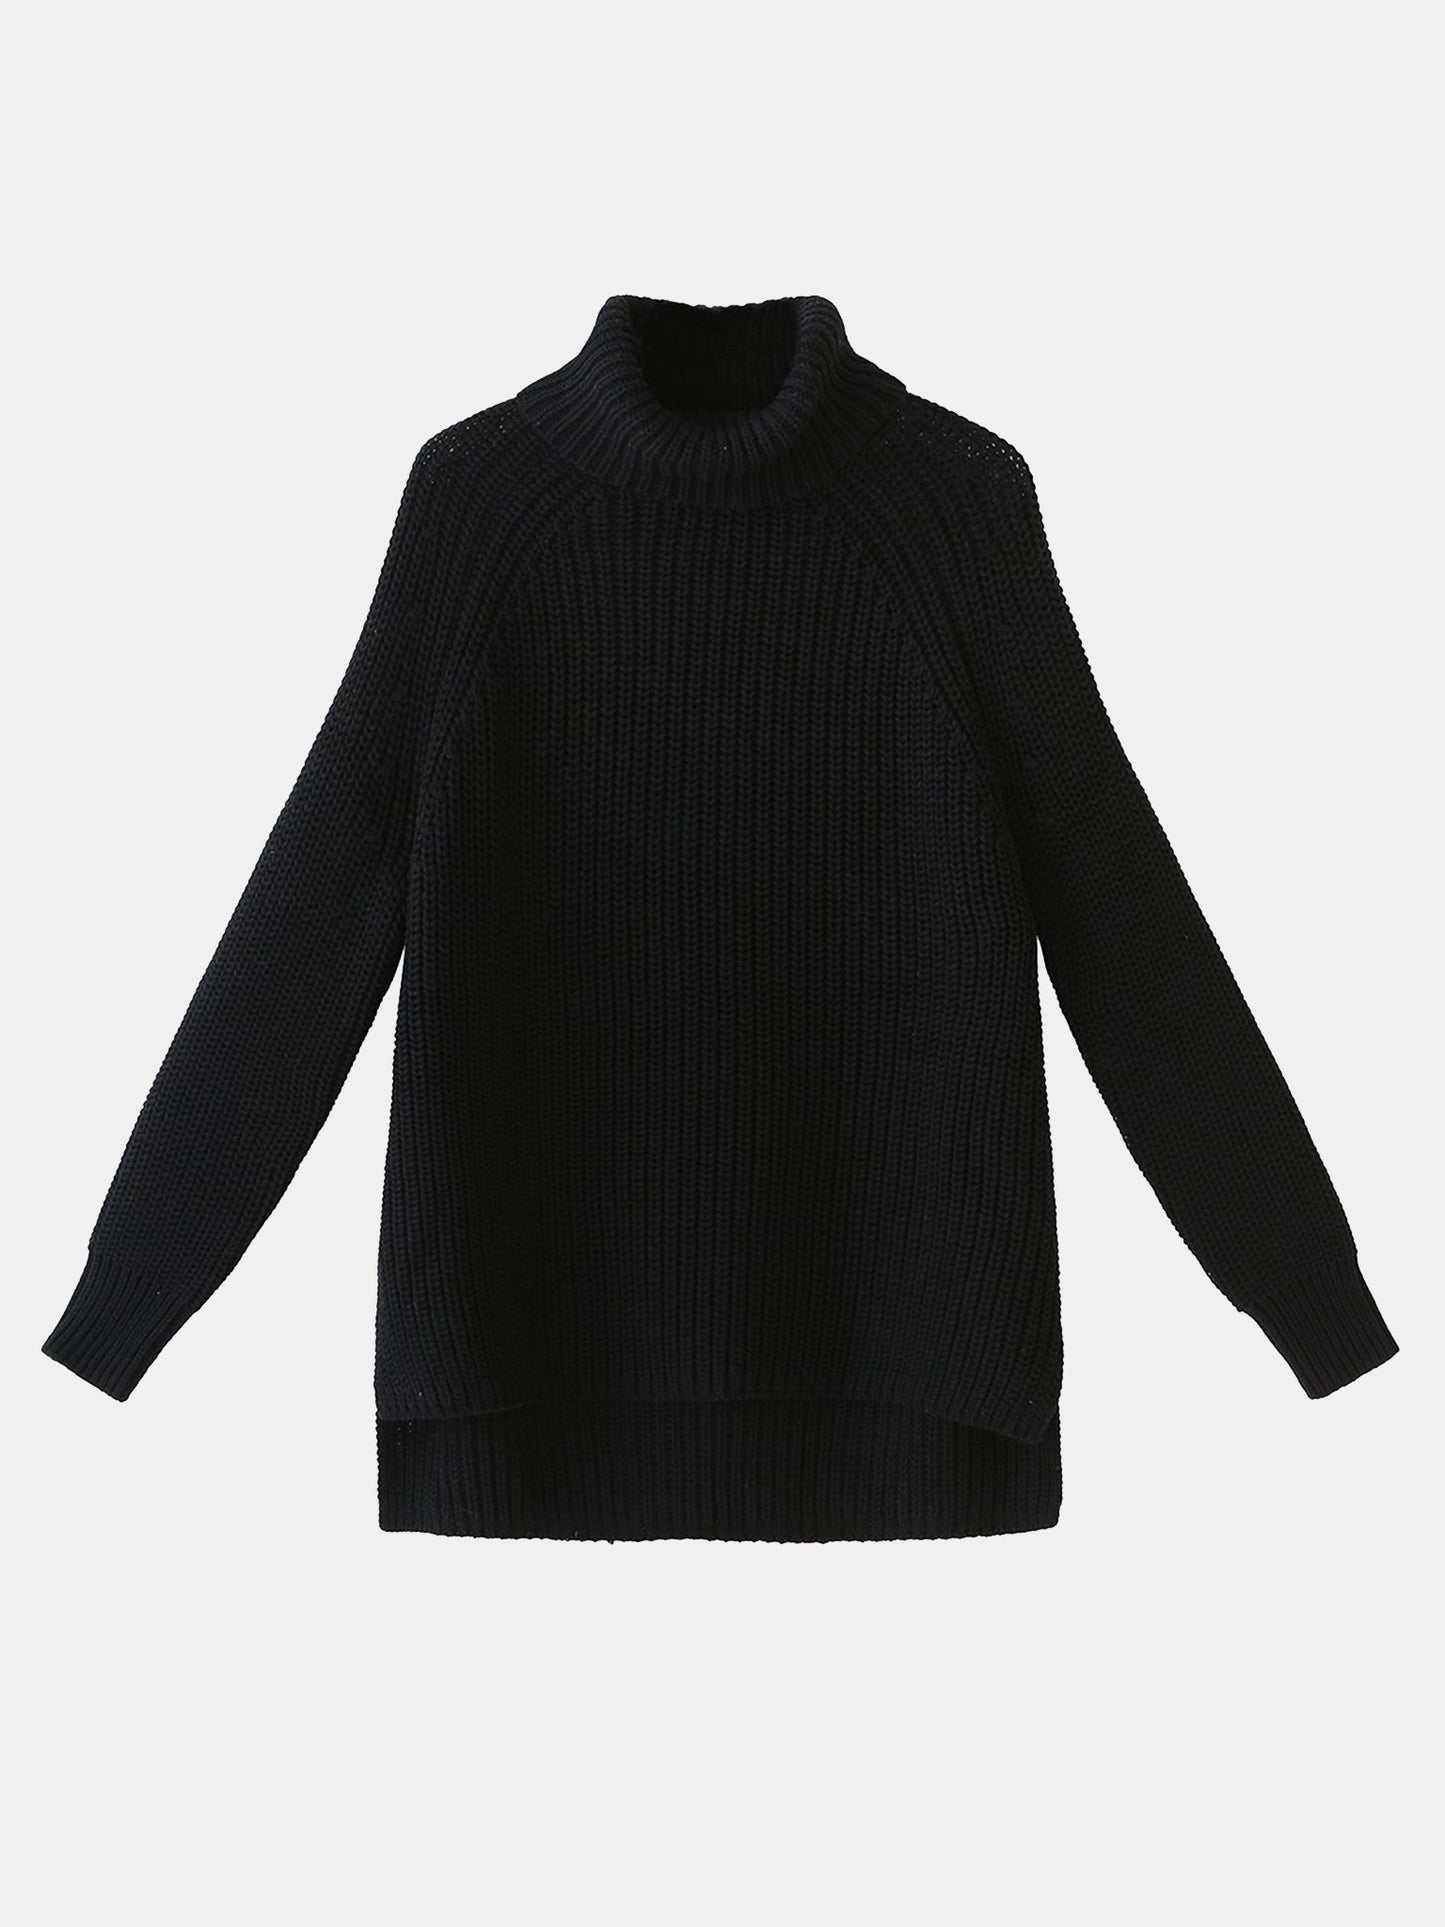 525 Women's Stella Turtleneck Sweater